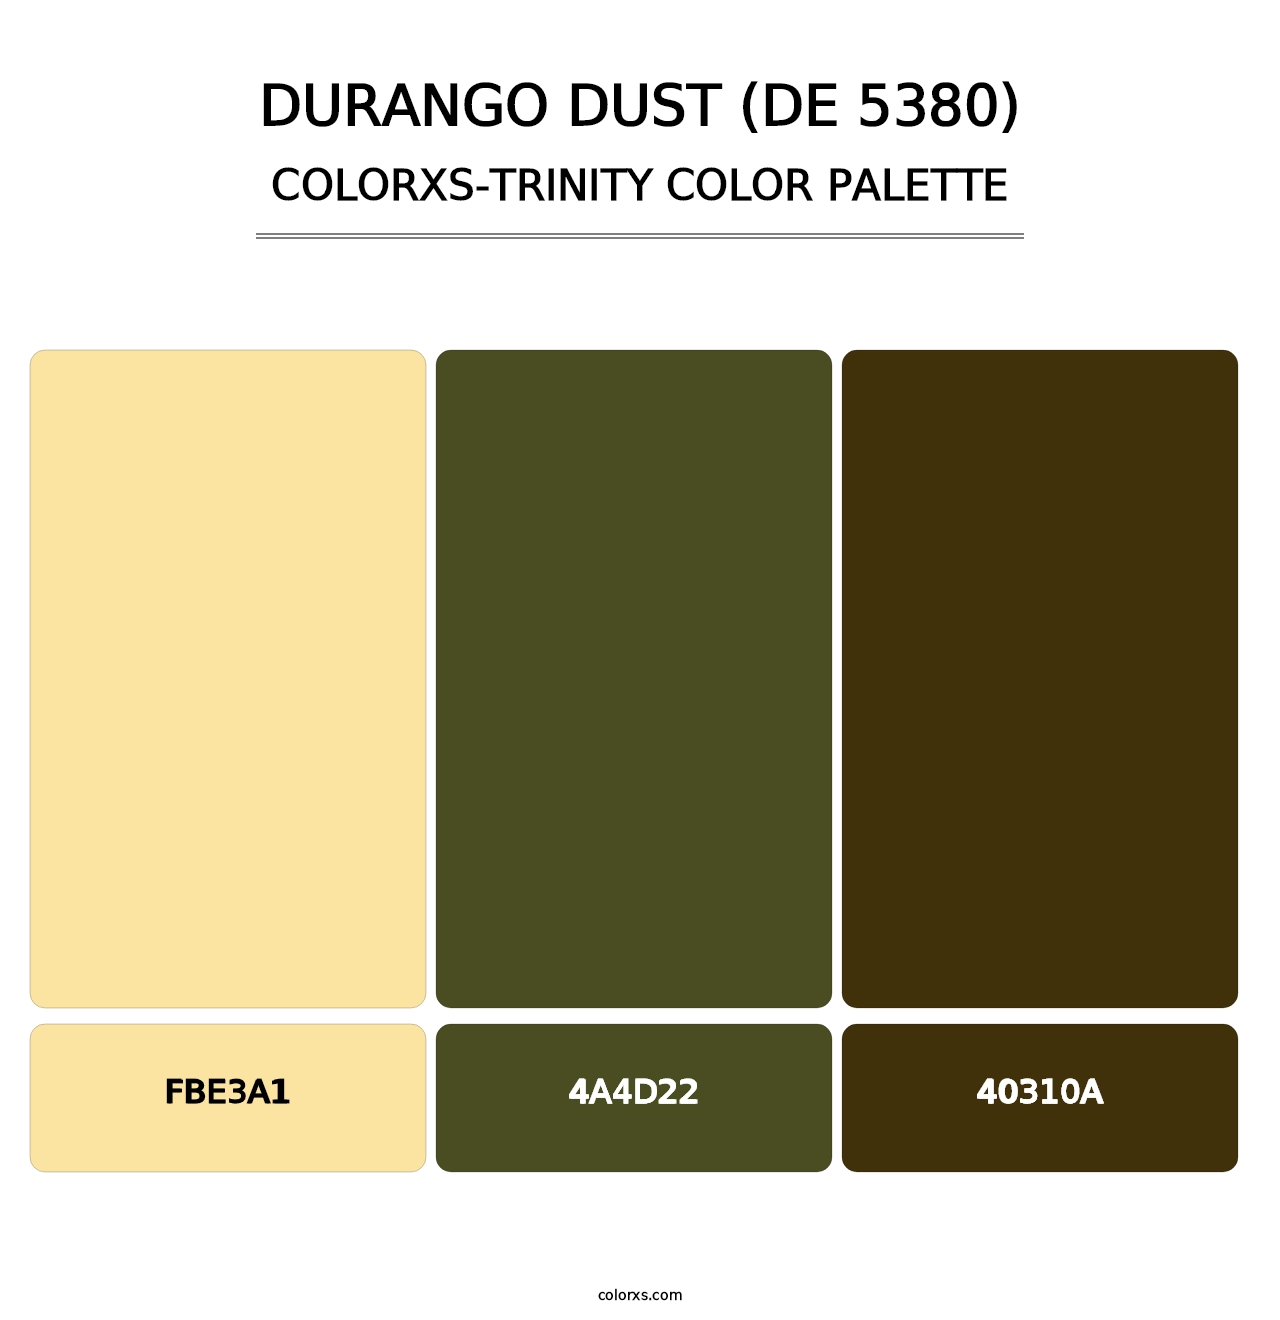 Durango Dust (DE 5380) - Colorxs Trinity Palette